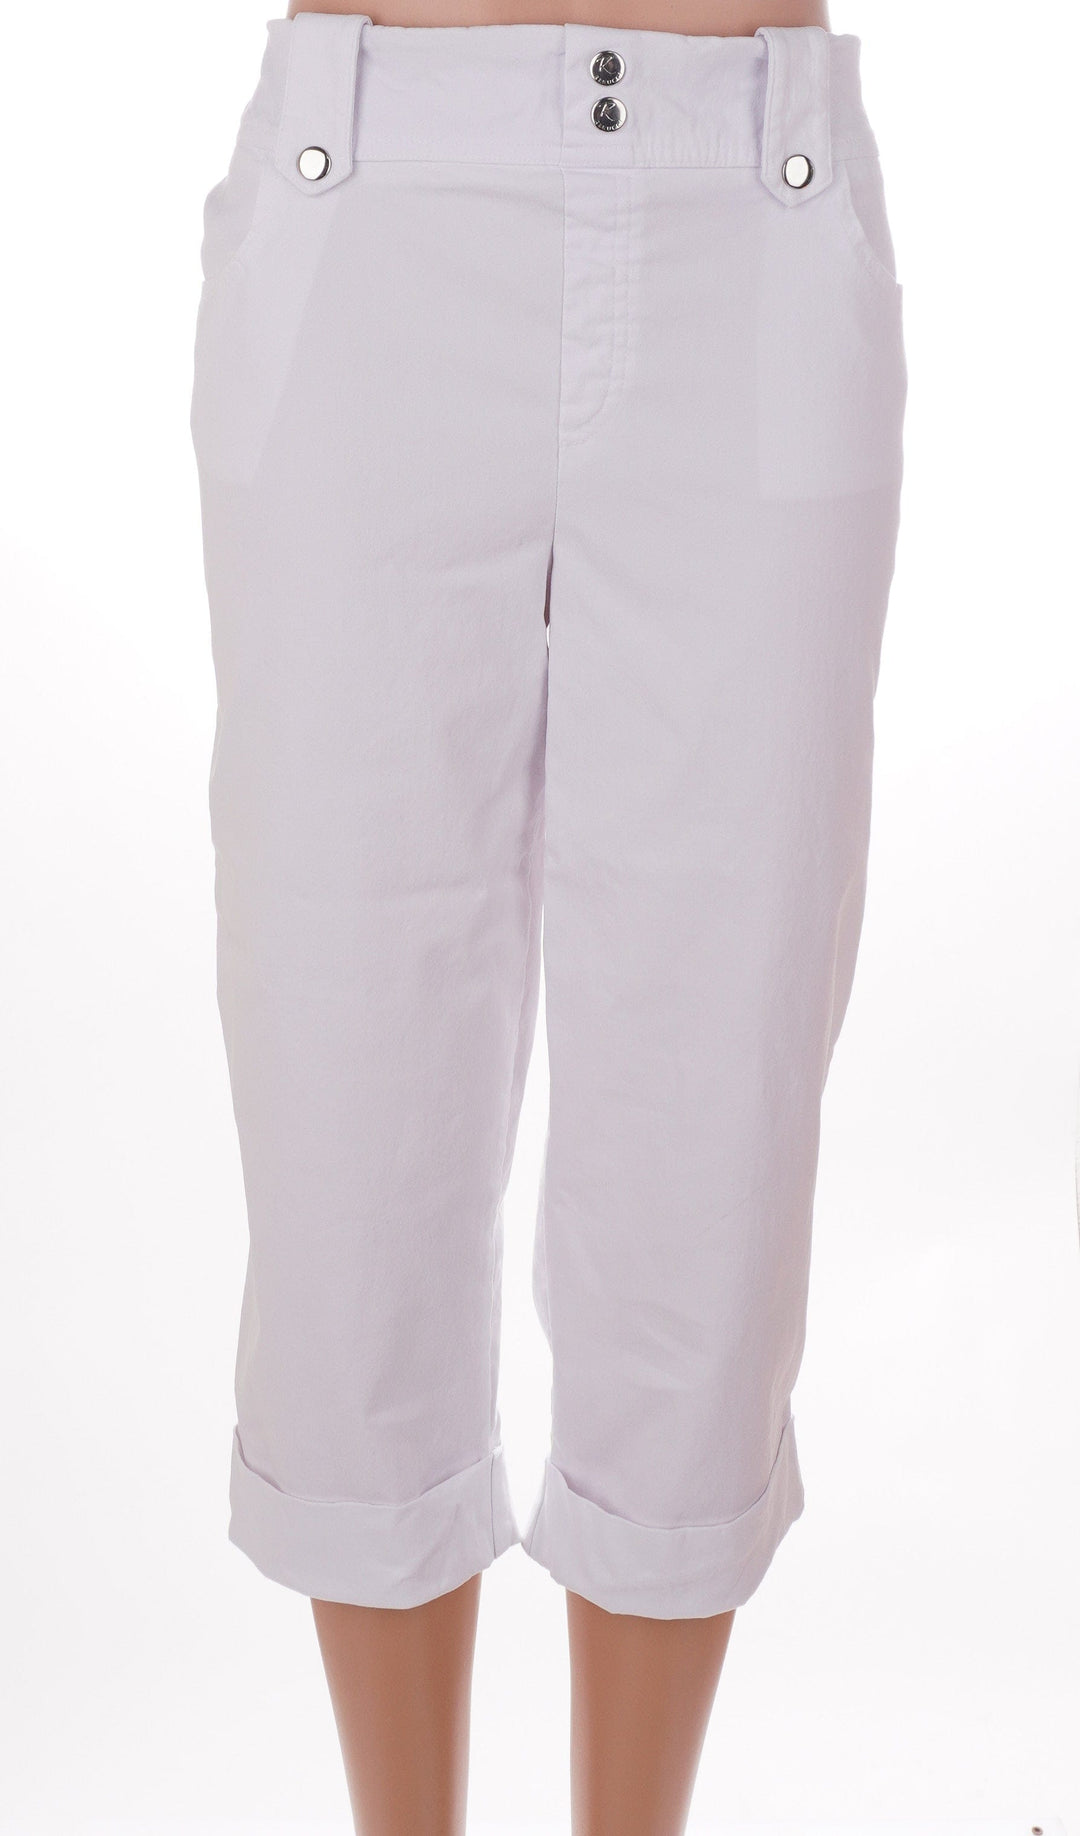 Rekucci Jeans White / 14 / Consigned Rekucci Capris - White - Size 14